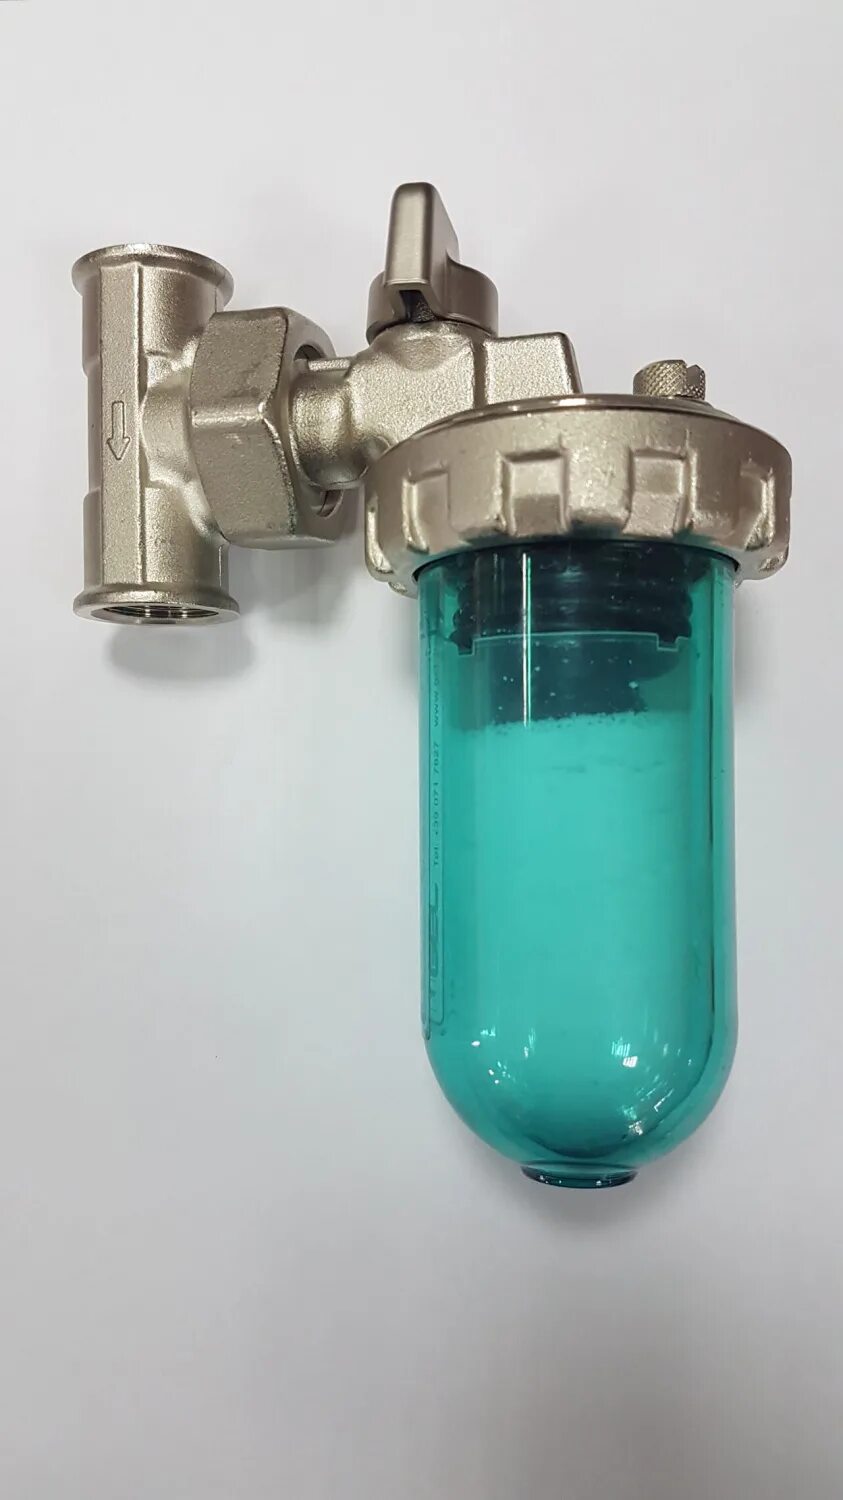 Фильтр смягчает воду. Дозатор Gel Dosaphos 250 1/2-1/2 Gel (умягчитель воды). Дозатор Gel Dosaphos 250 1/2". Умягчитель воды Dosaphos 250 1/2. Дозатор-умягчитель воды Dosaphos 250.